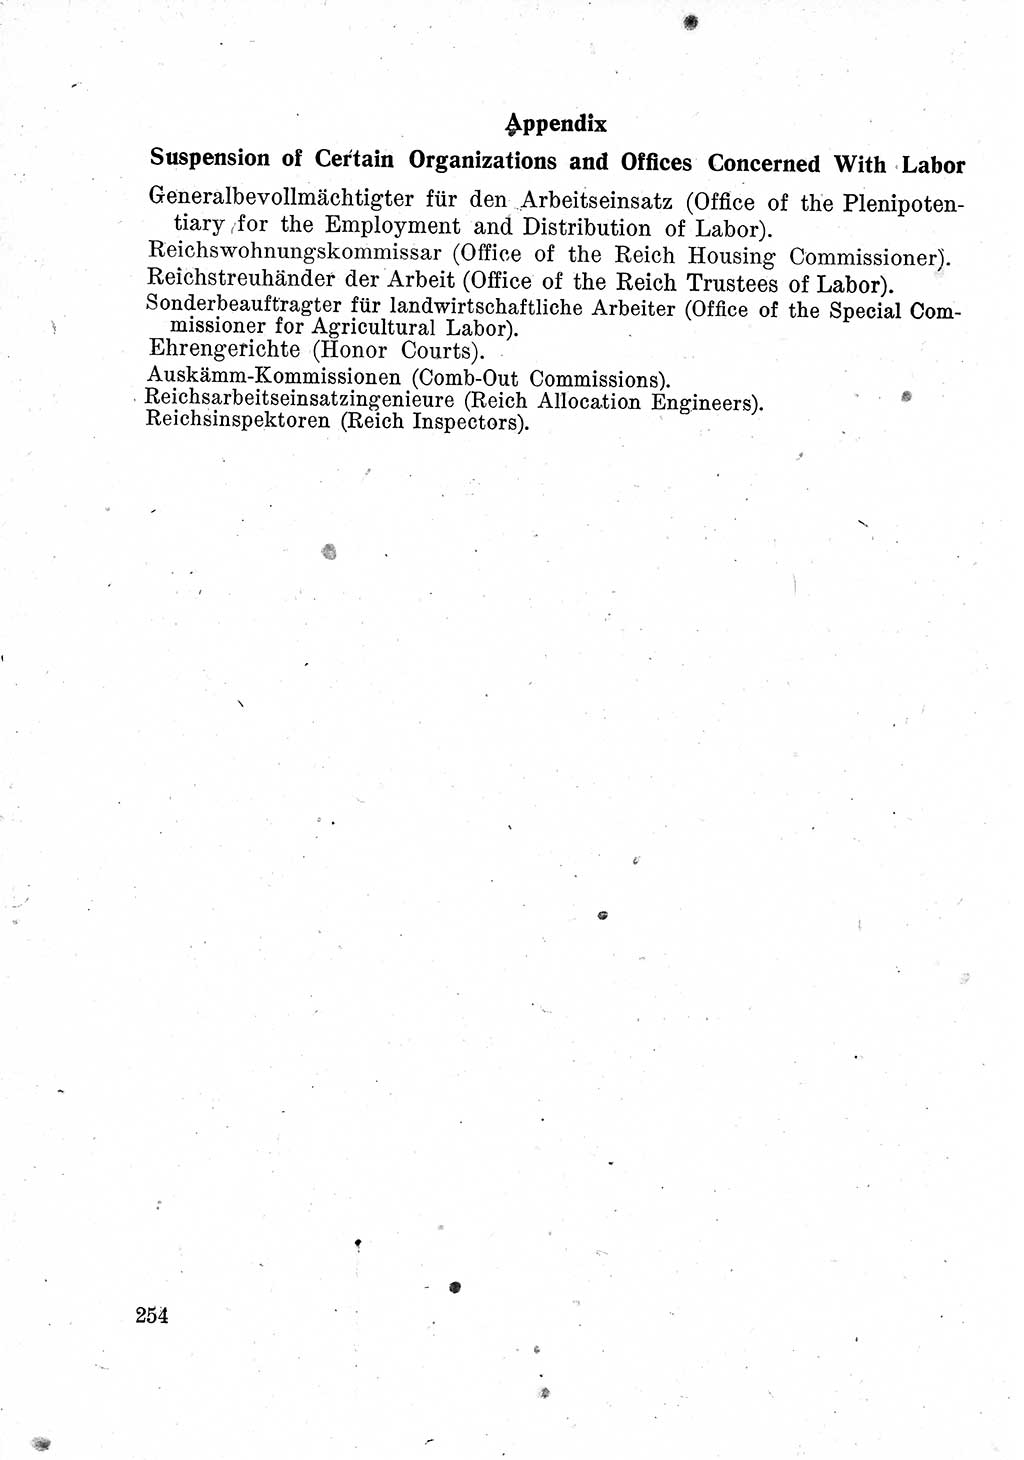 Das Recht der Besatzungsmacht (Deutschland), Proklamationen, Deklerationen, Verordnungen, Gesetze und Bekanntmachungen 1947, Seite 254 (R. Bes. Dtl. 1947, S. 254)